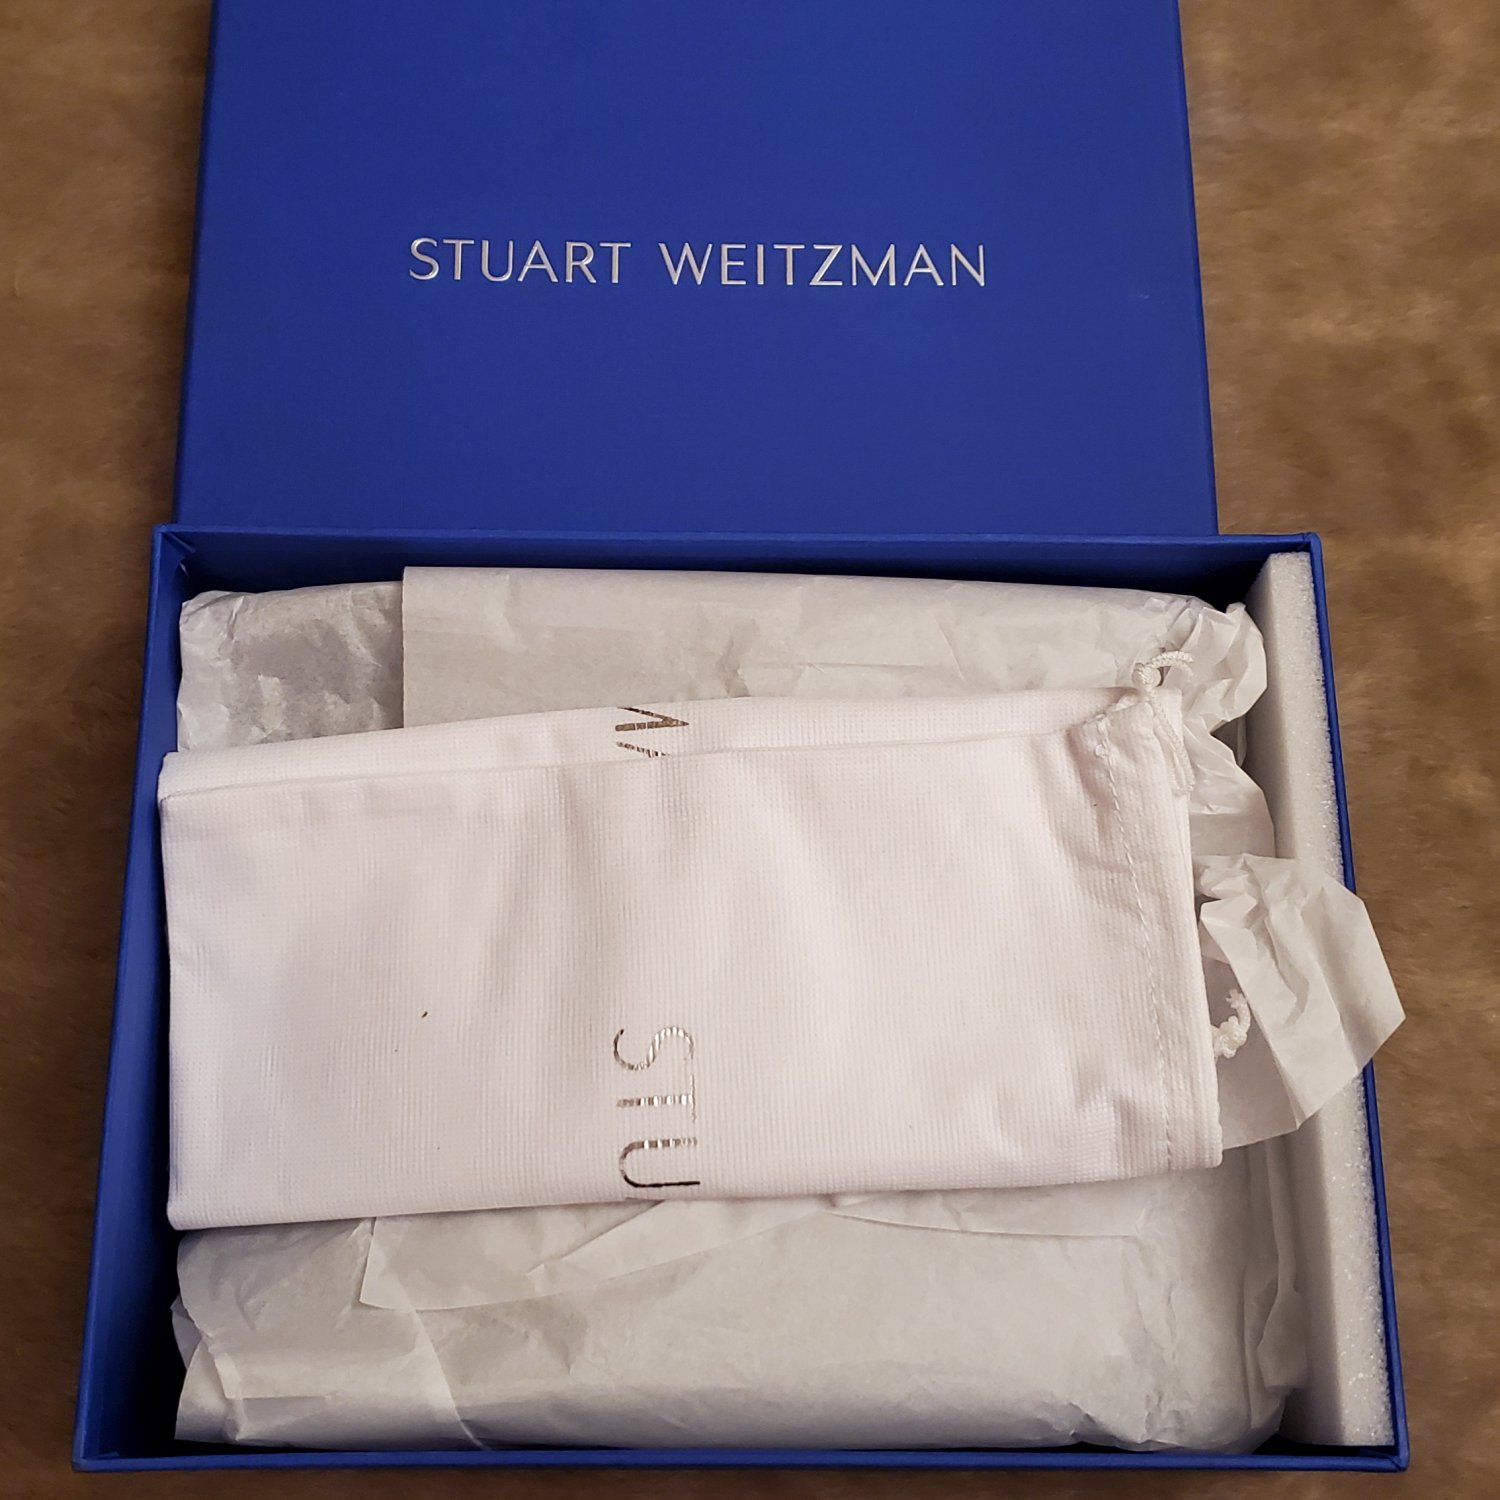 New Stuart Weitzman MIRA Mule bootie in box